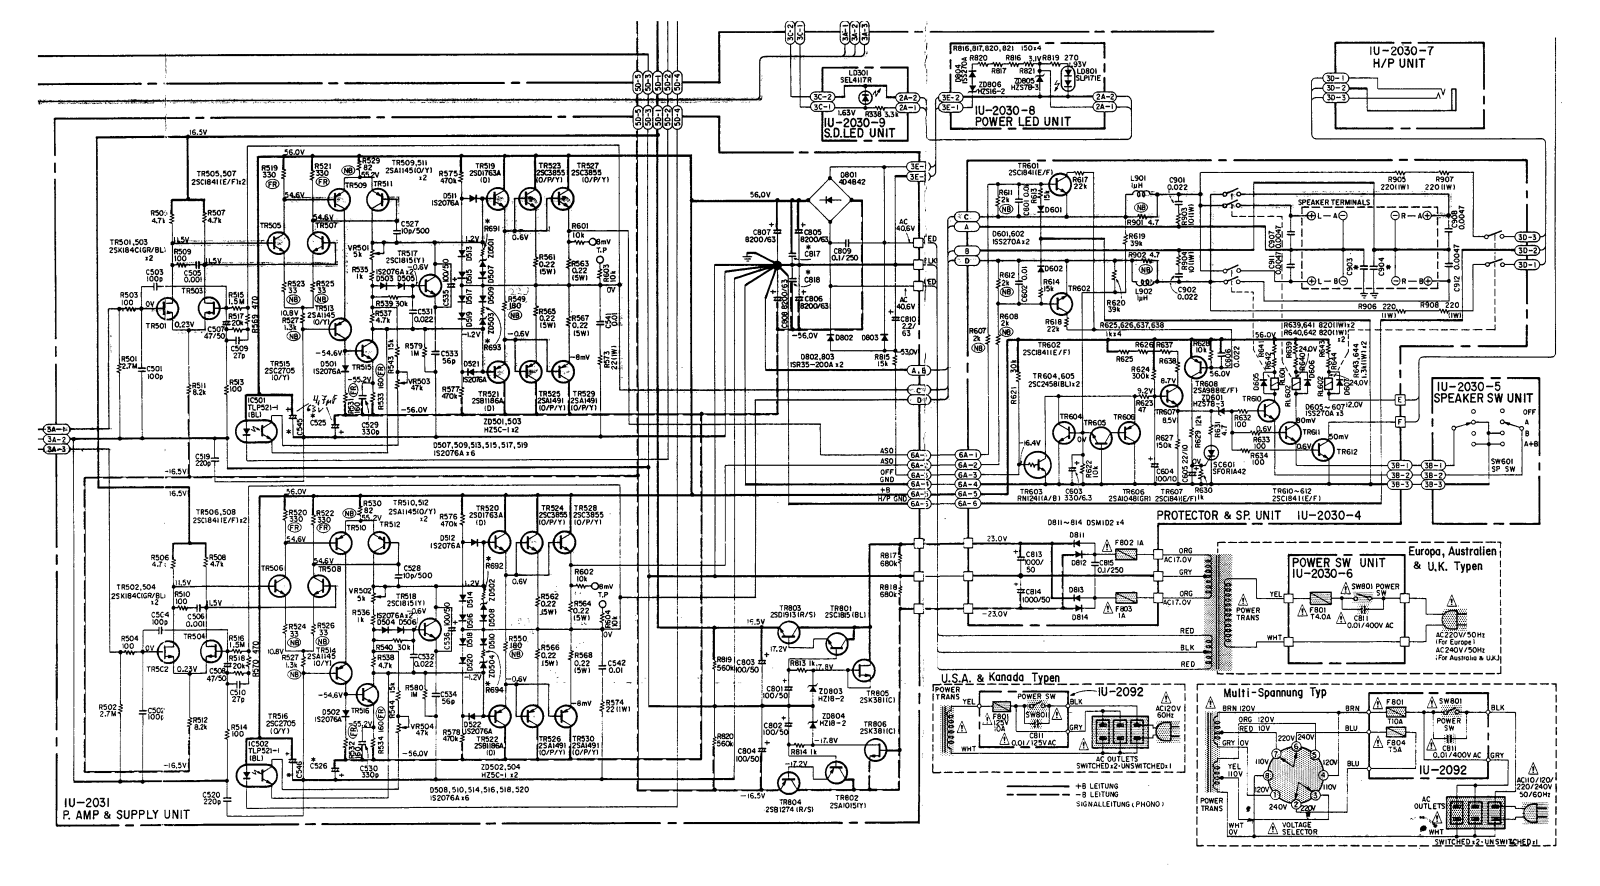 Denon PMA-1060 partial schematics